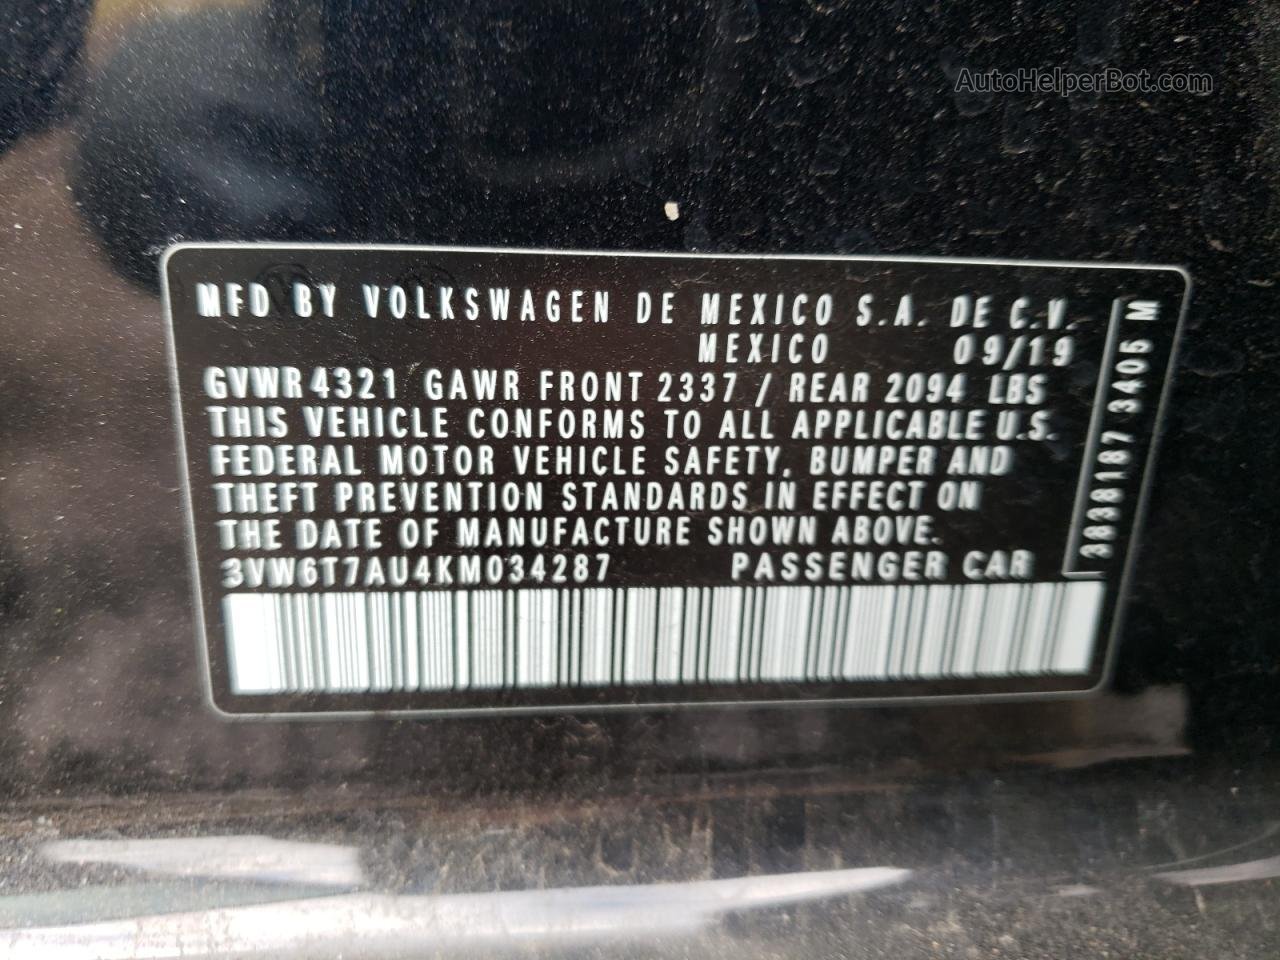 2019 Volkswagen Gti S Black vin: 3VW6T7AU4KM034287